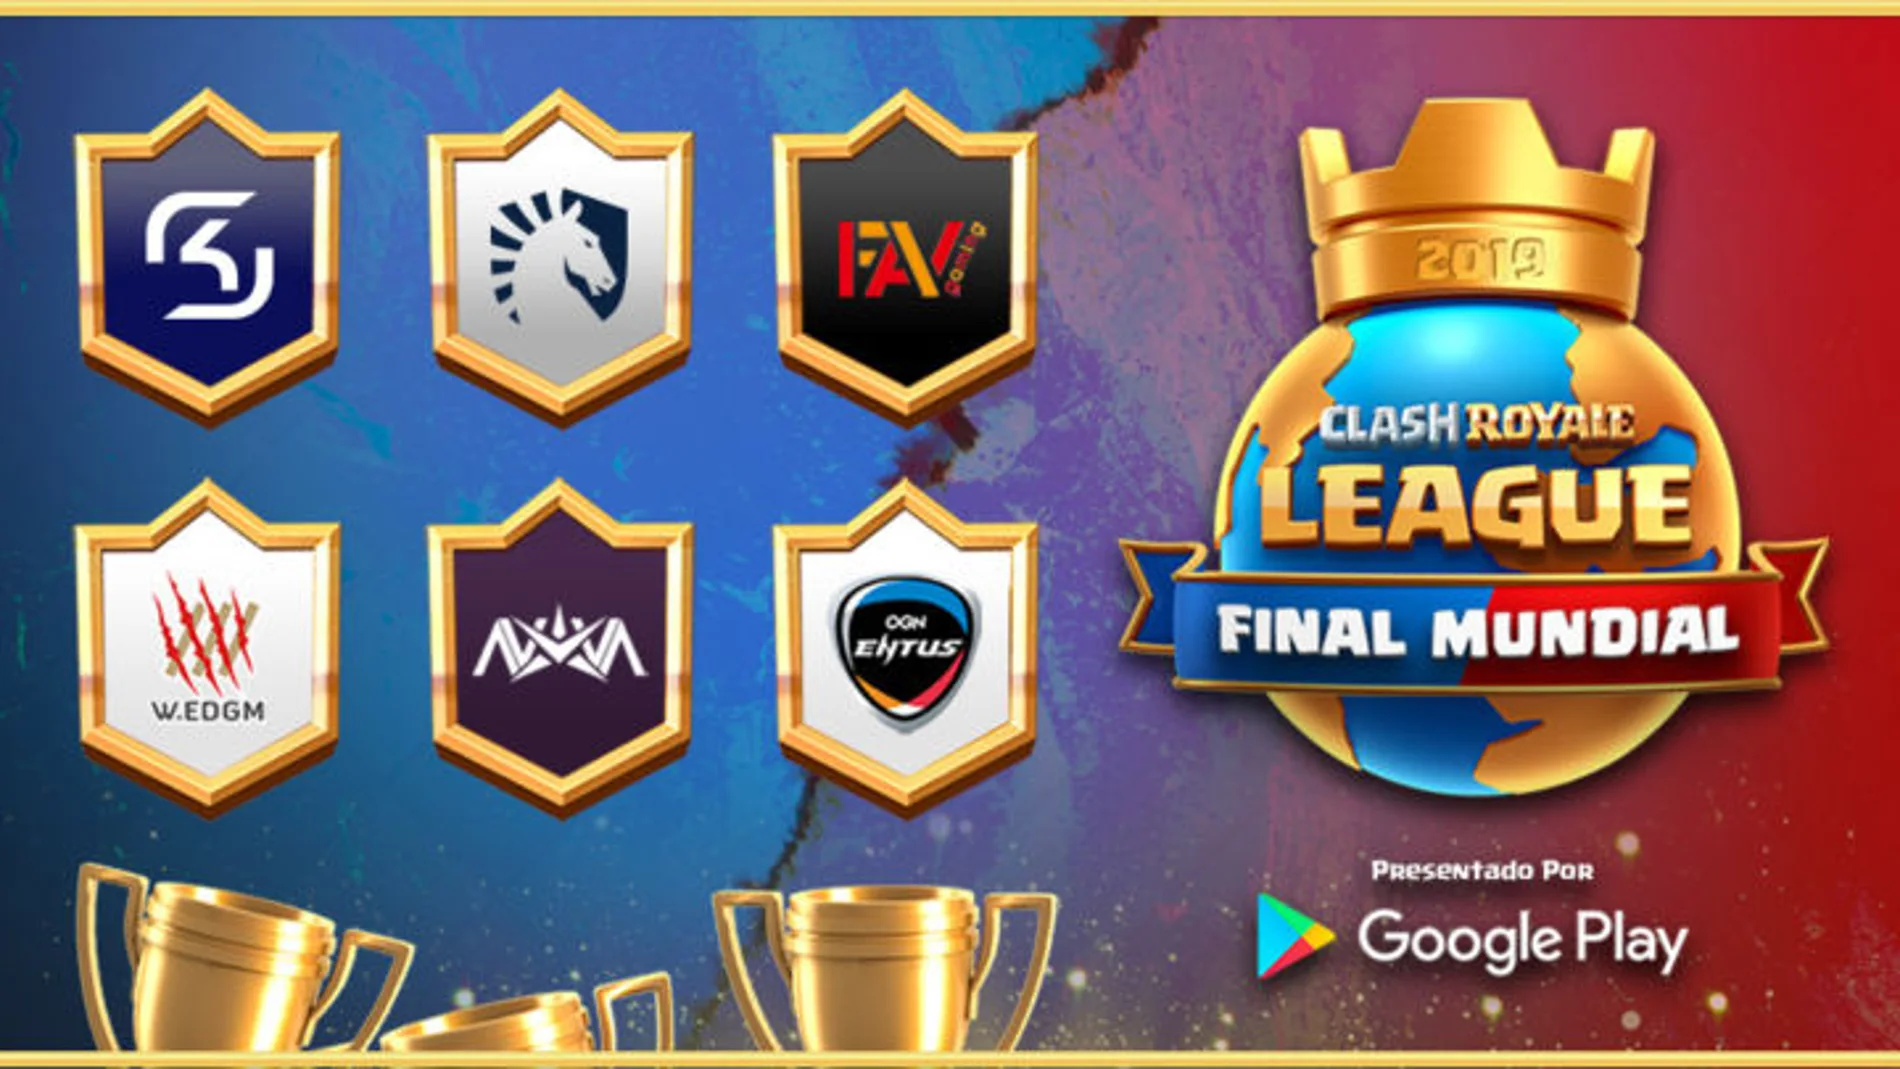 Final Mundial de la Clash Royale League 2019